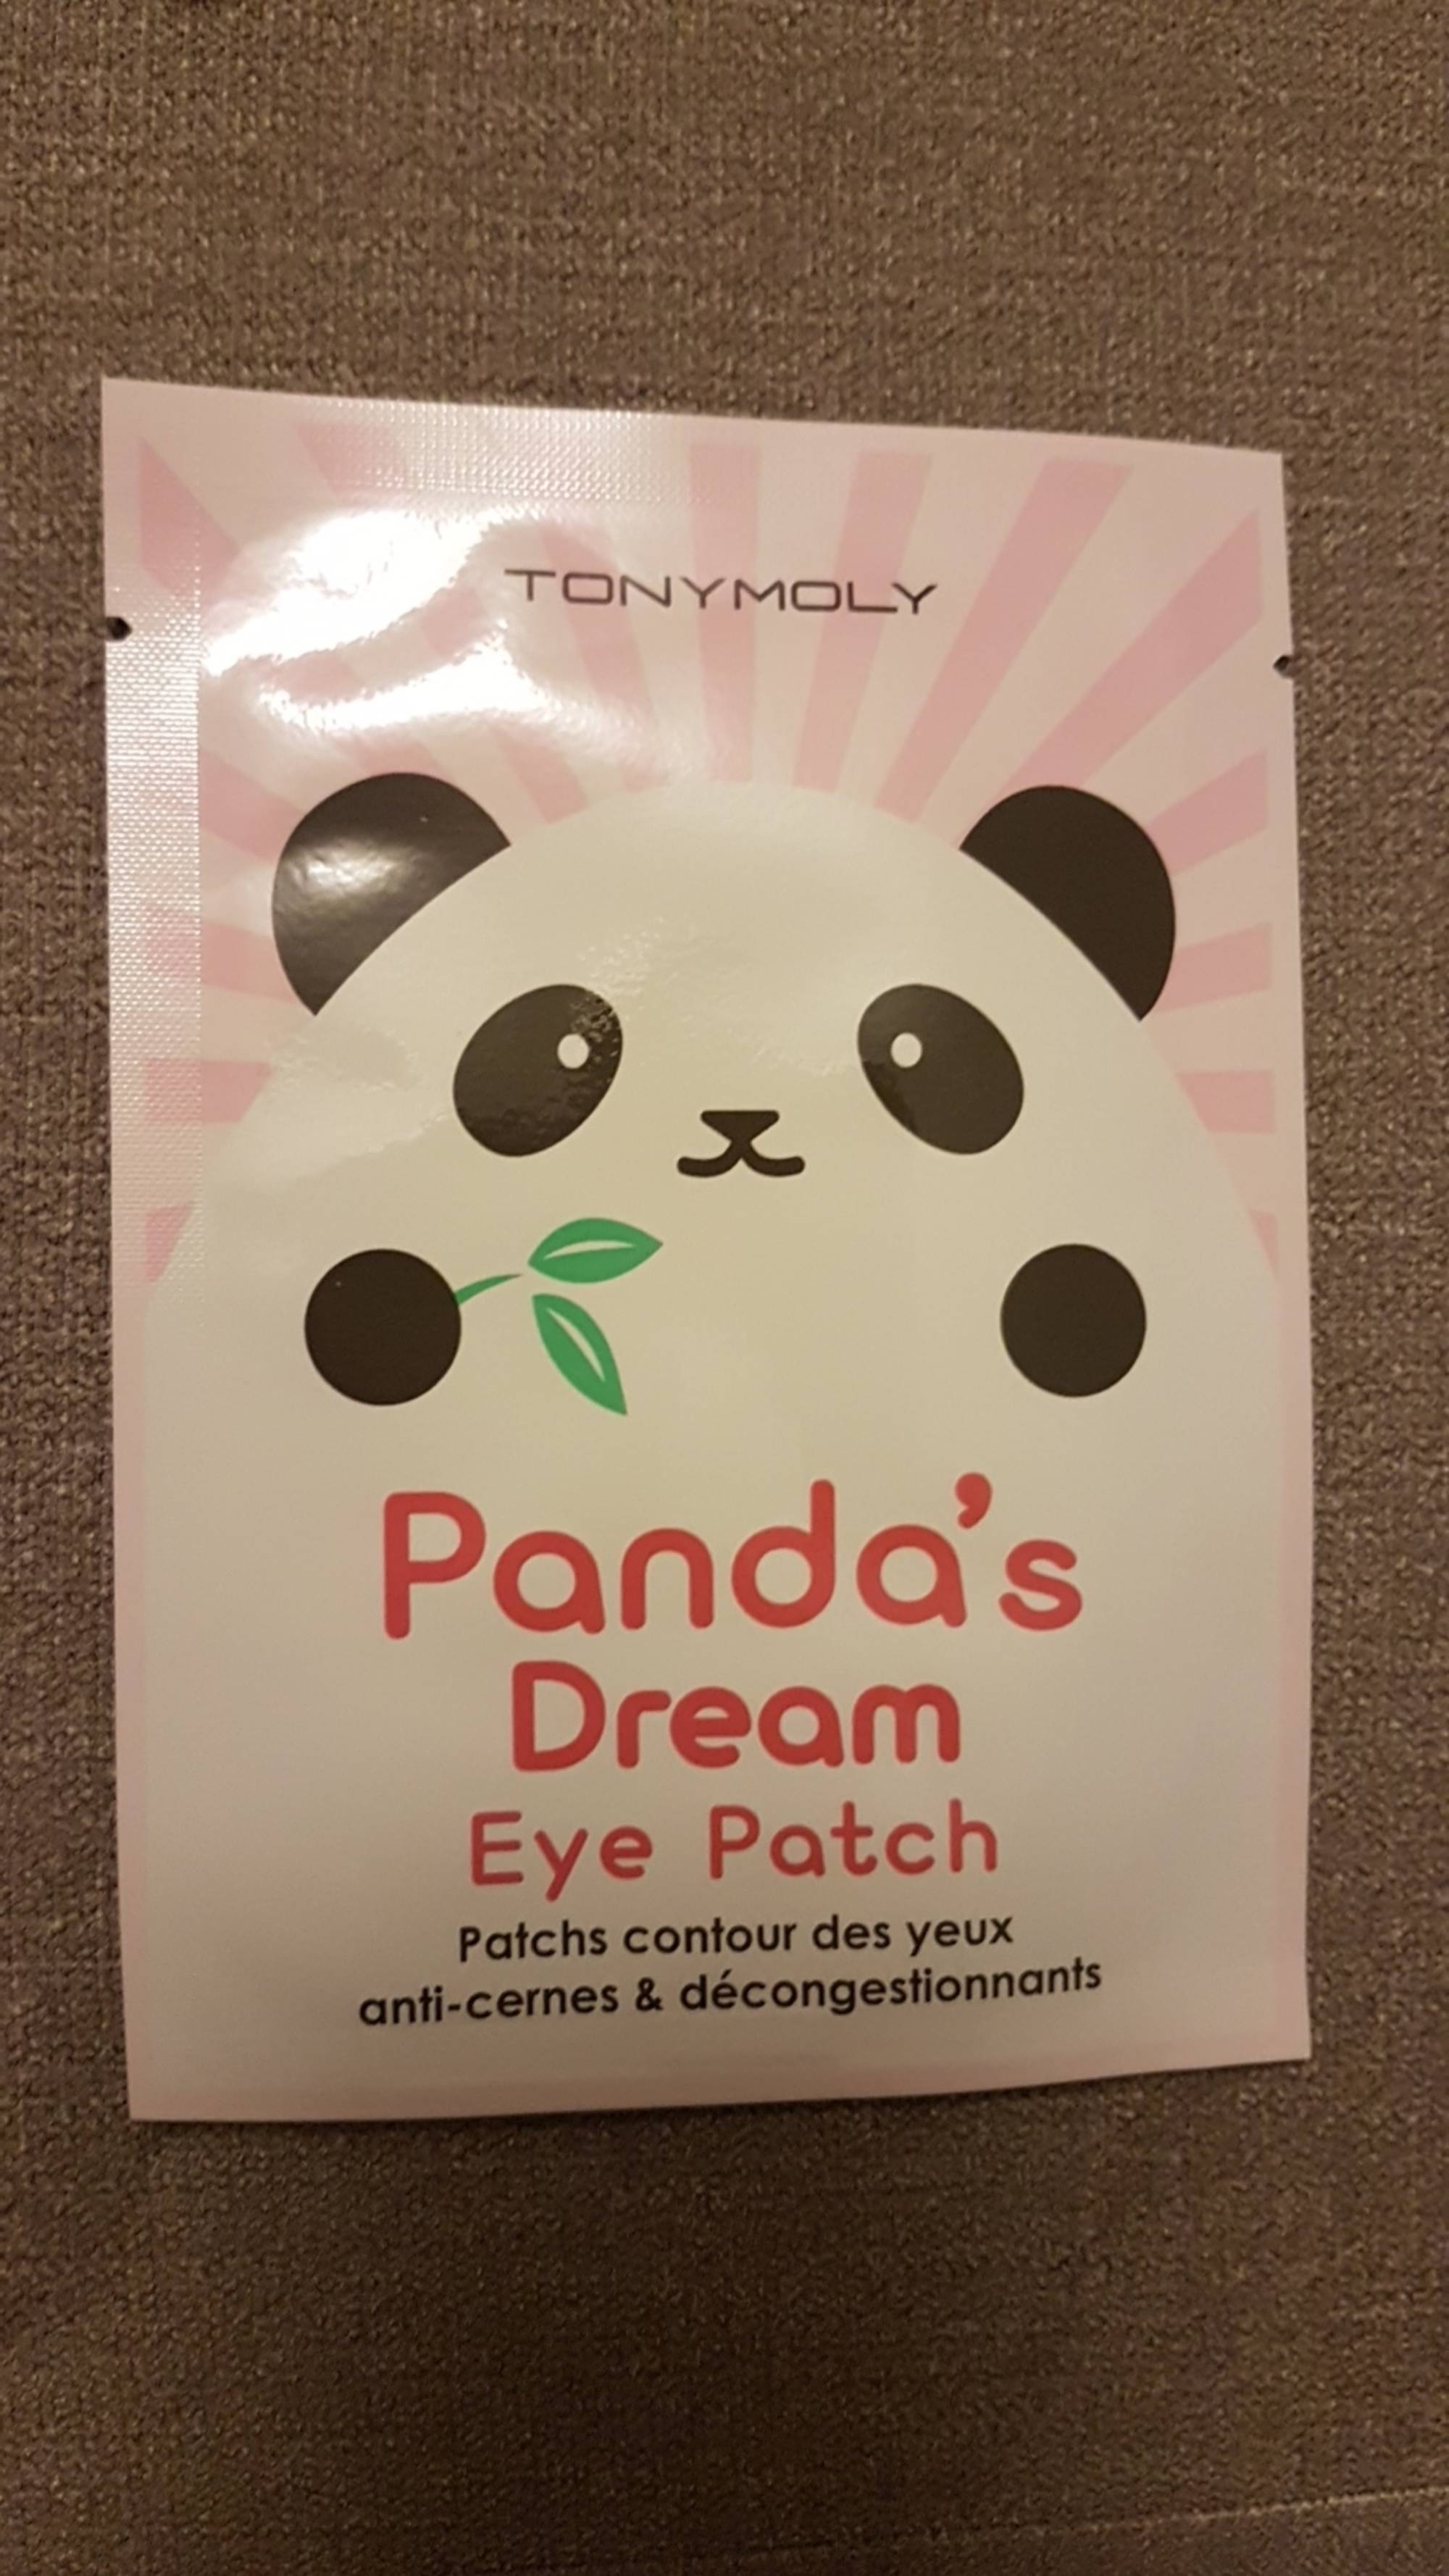 TONYMOLY - Panda's dream eye patch - Patchs contour des yeux